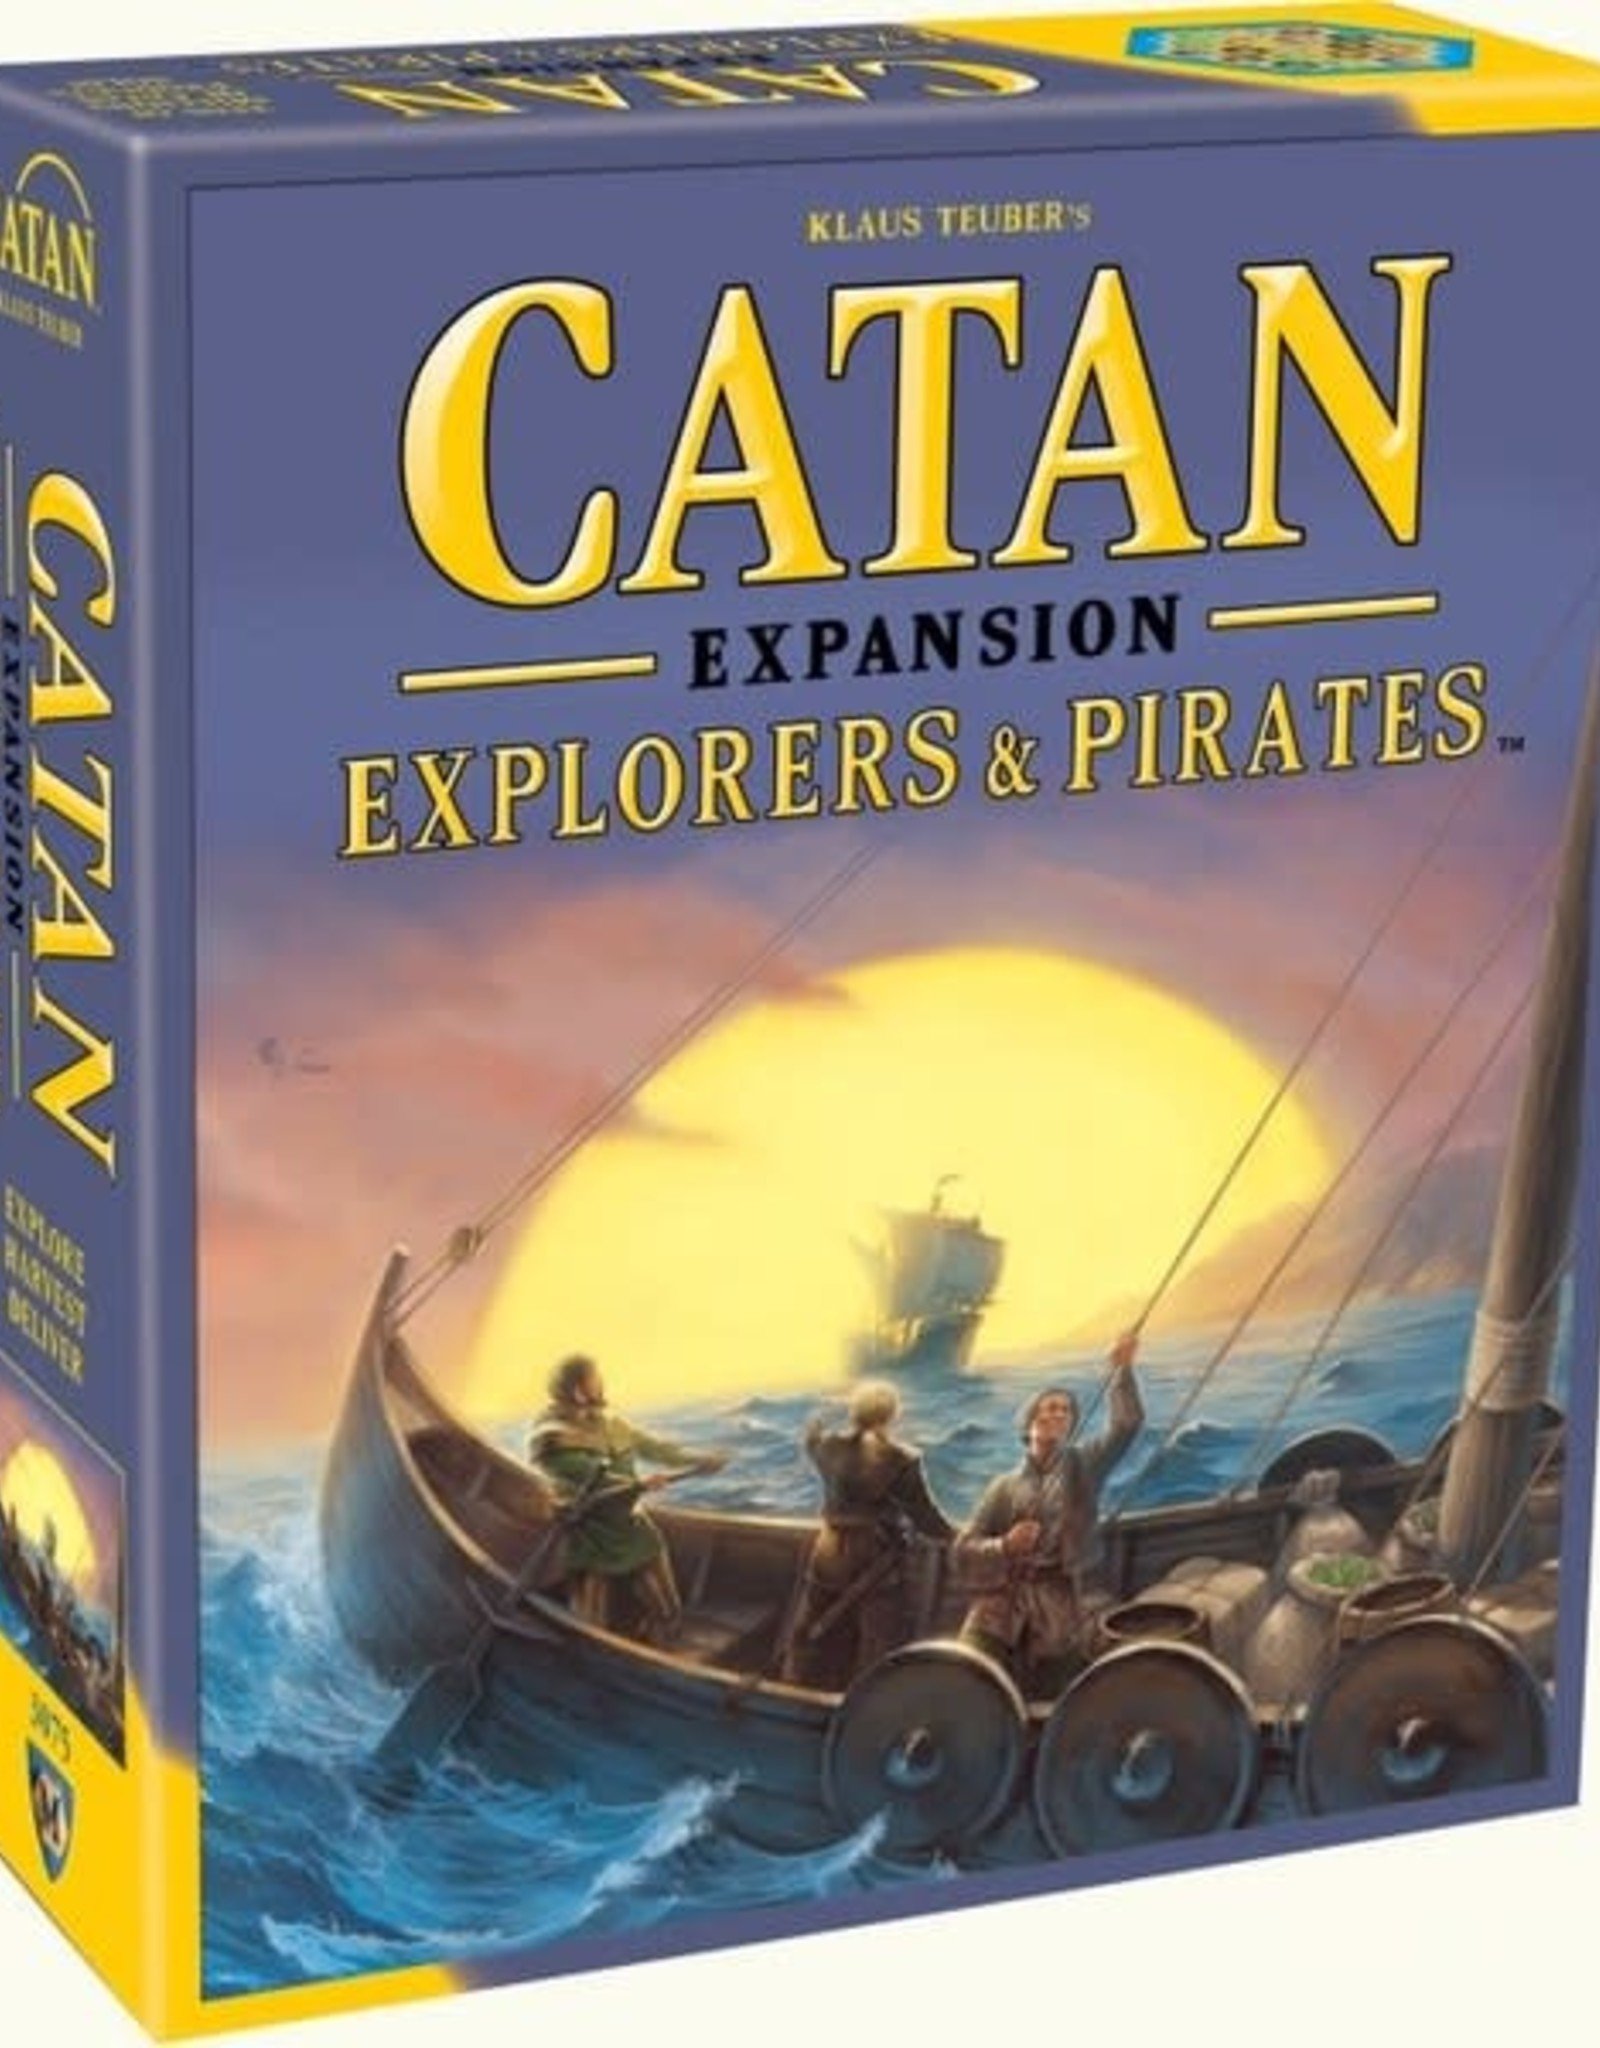 Catan Studio Catan Explorers & Pirates Expansion